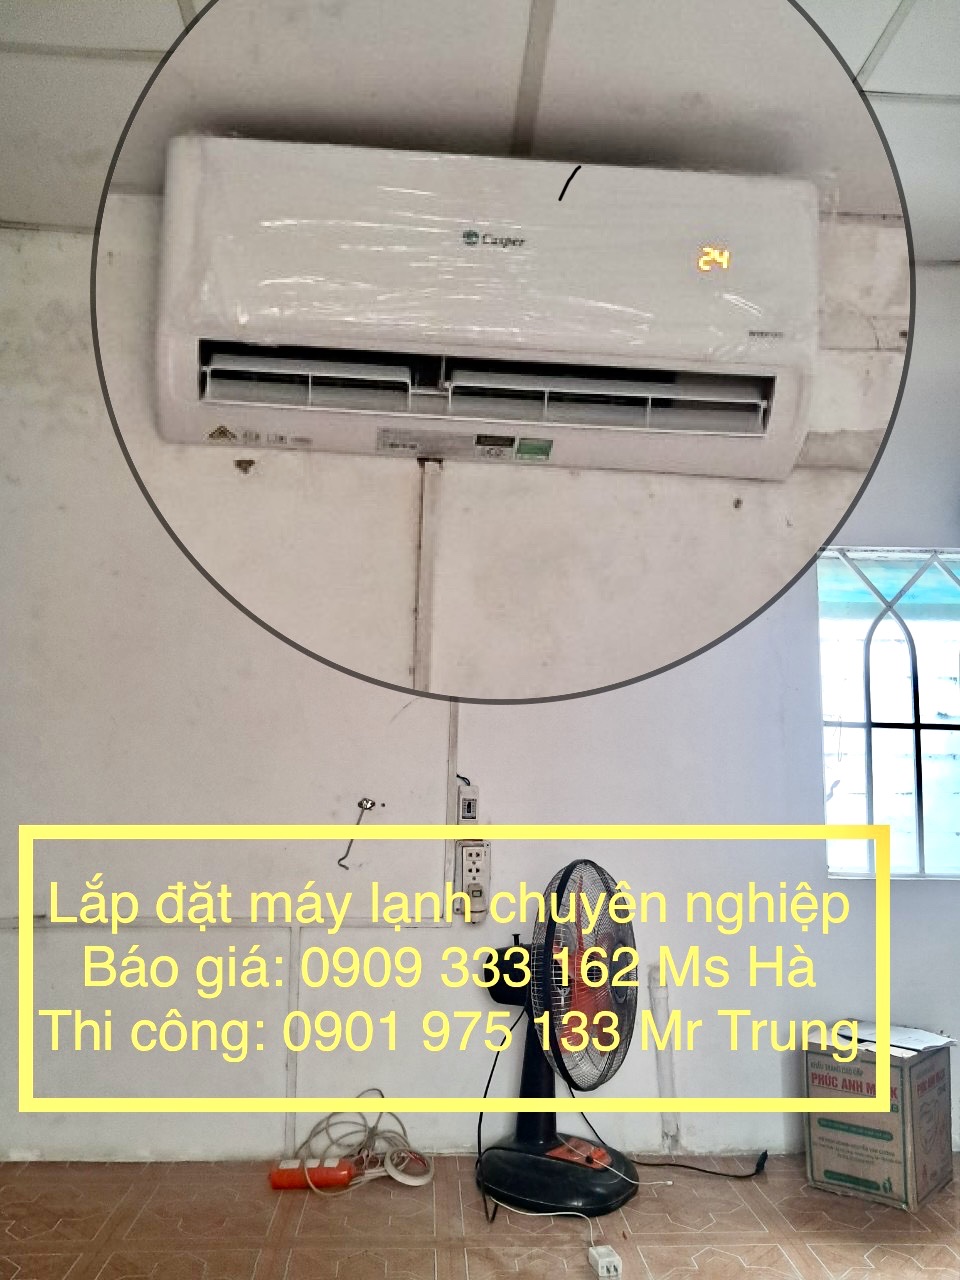 Sự cần thiết khi lắp đặt máy lạnh cho phòng trọ Thien-Ngan-Phat-lap-dat-may-lanh-treo-tuong-Casper